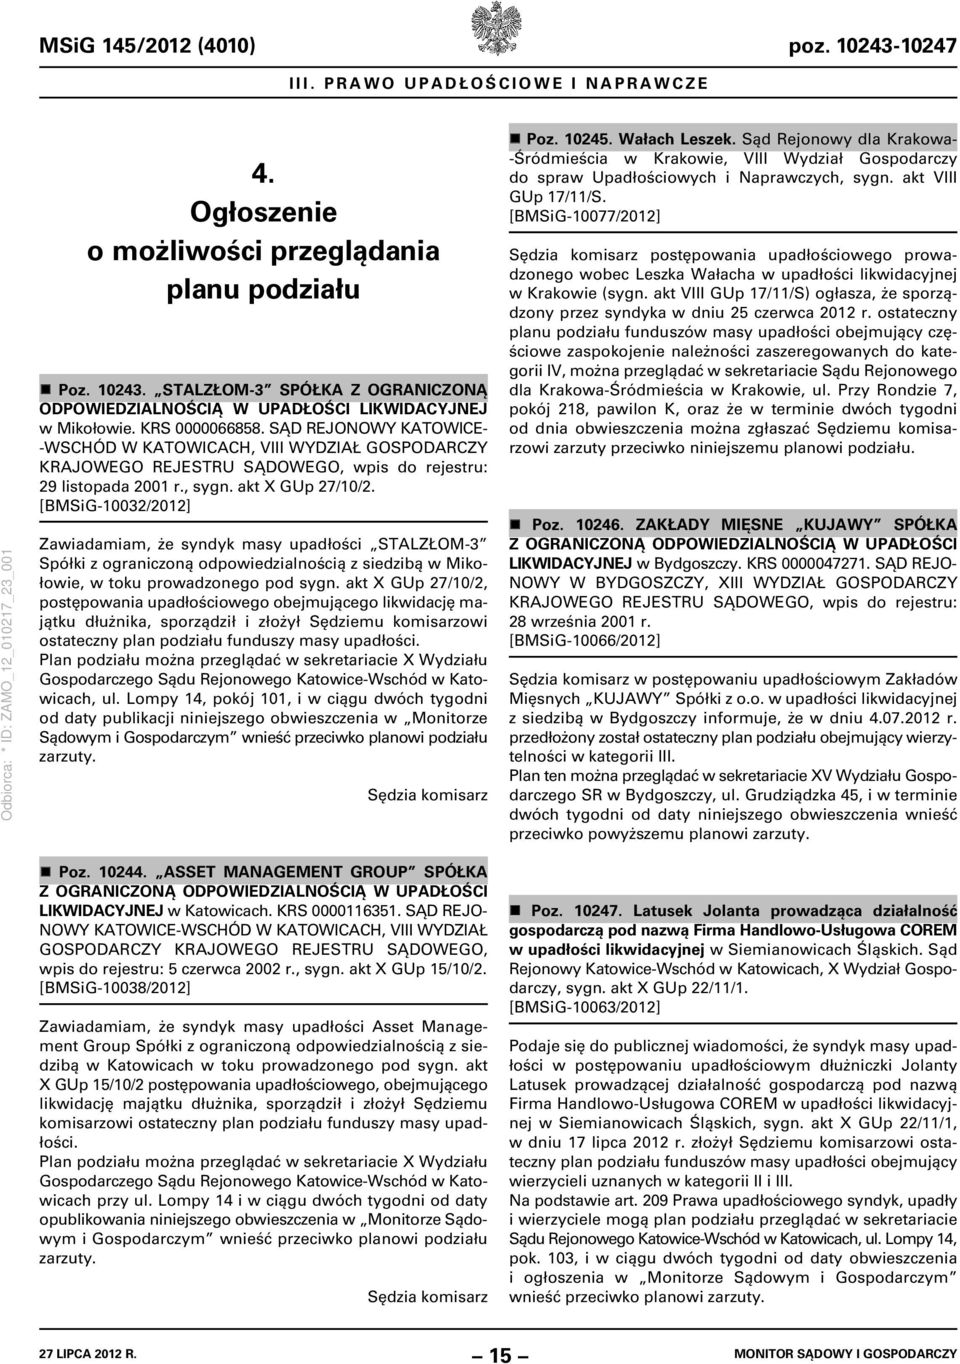 [BMSiG-10032/2012] Zawiadamiam, że syndyk masy upadłości STALZŁOM-3 Spółki z ograniczoną odpowiedzialnością z siedzibą w Mikołowie, w toku prowadzonego pod sygn.